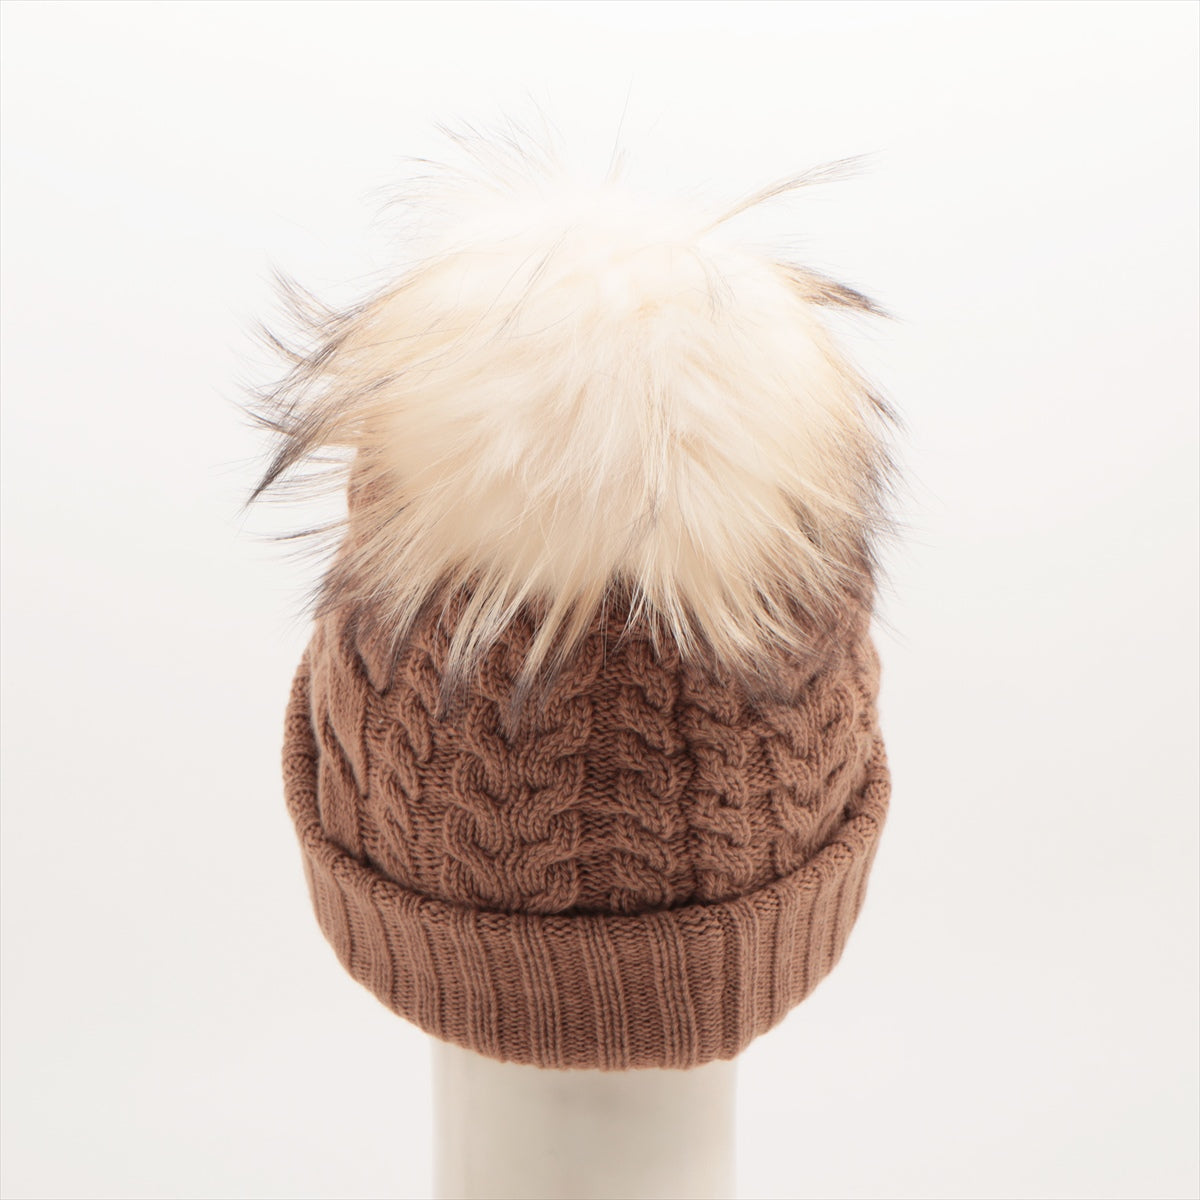 Miu Miu Knit cap Wool & cashmere Camel Fox fur cable knitting Knit hat